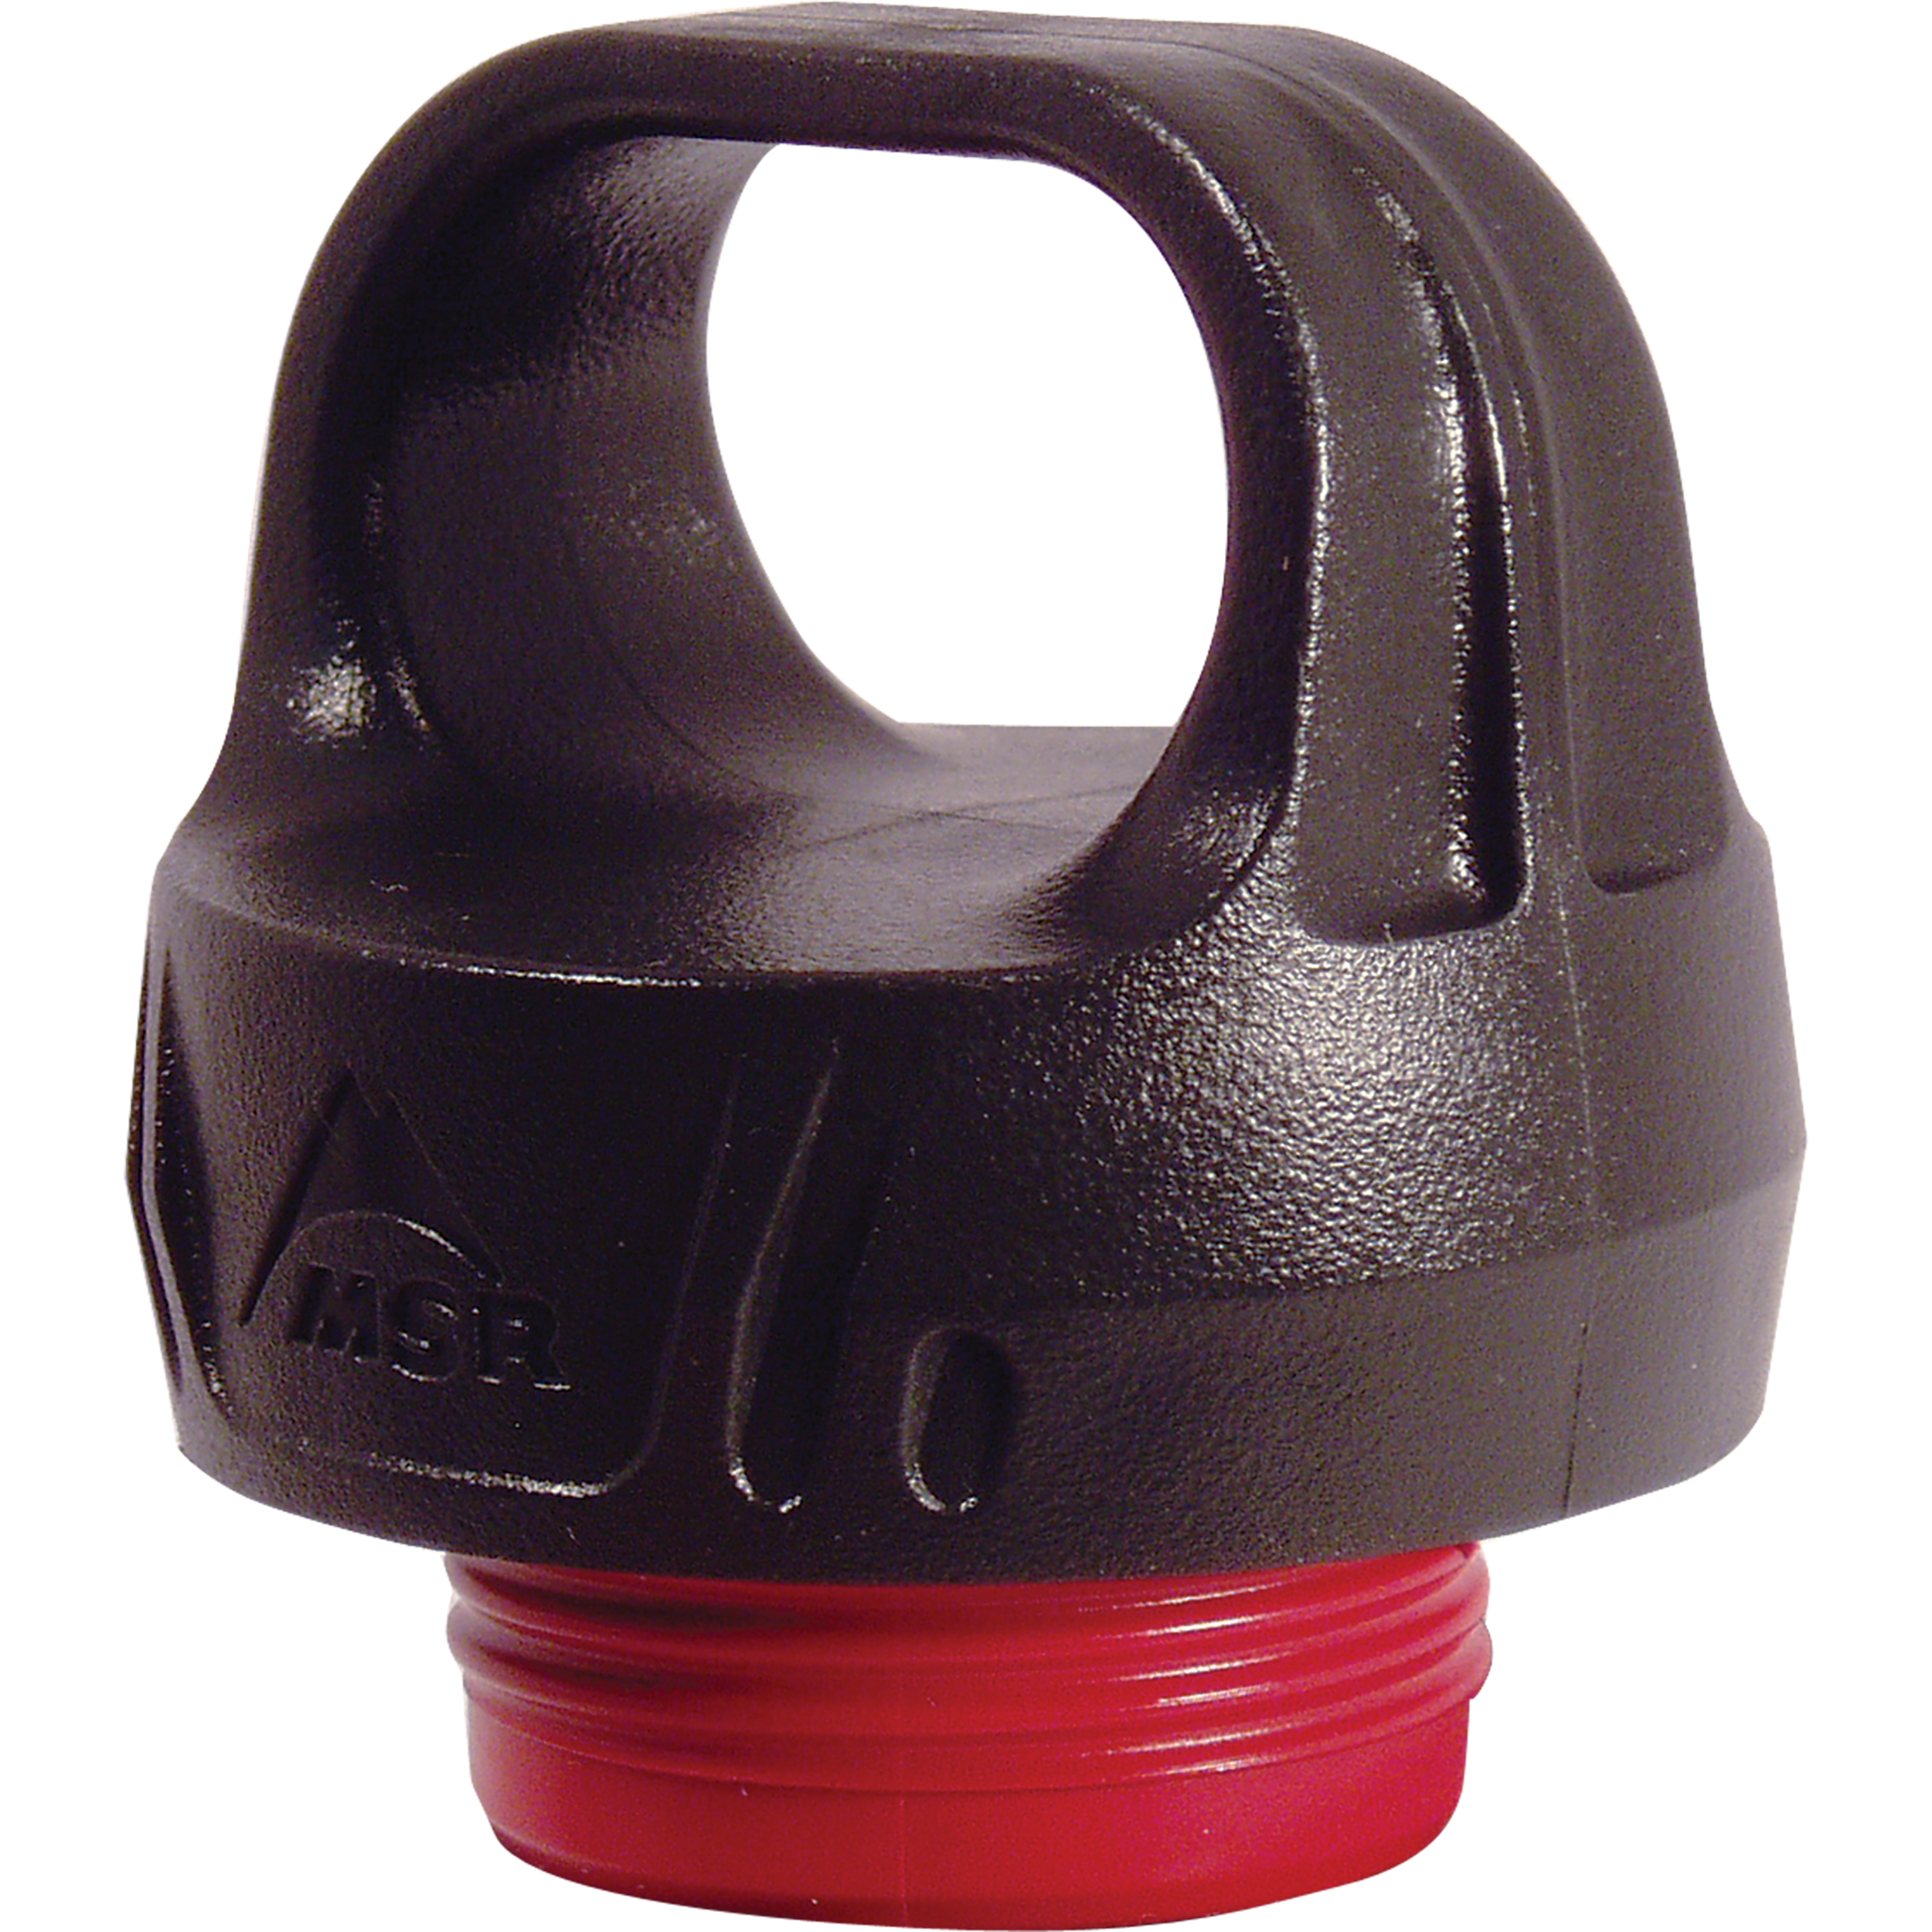 Child Resistant Fuel Bottle Cap